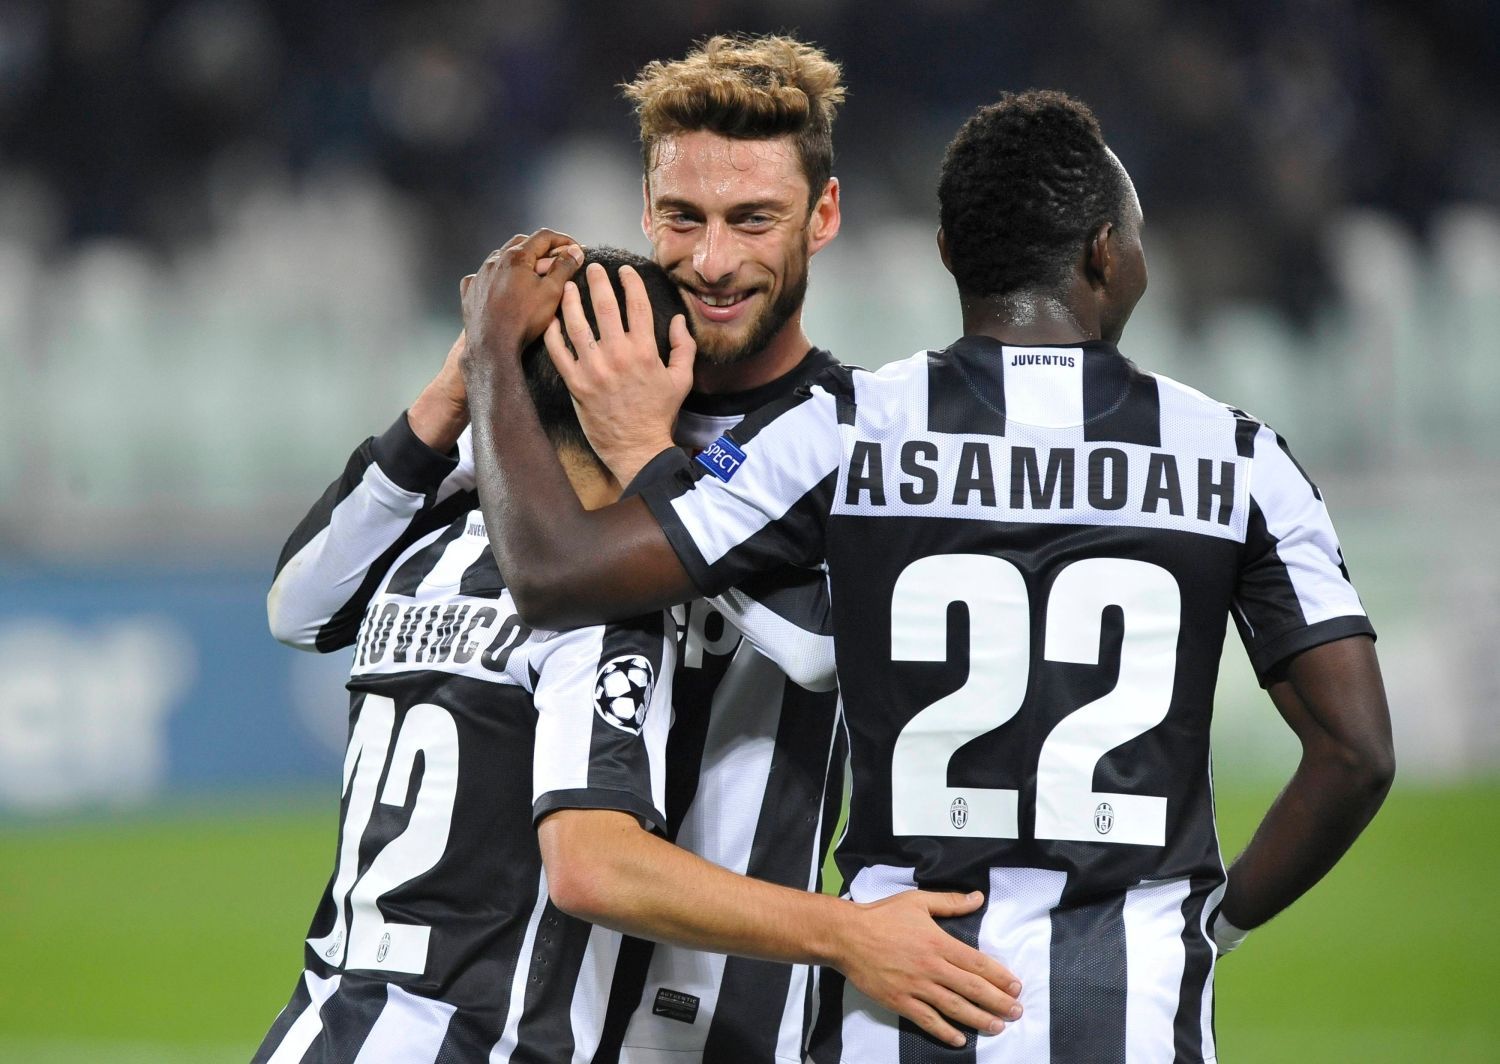 Fotbalisté Juventusu Sebastian Giovinco, Claudio Marchisio a Kwadwo Asamoah slaví gól v utkání proti Nordsjaellandem v Lize mistrů 2012/13.